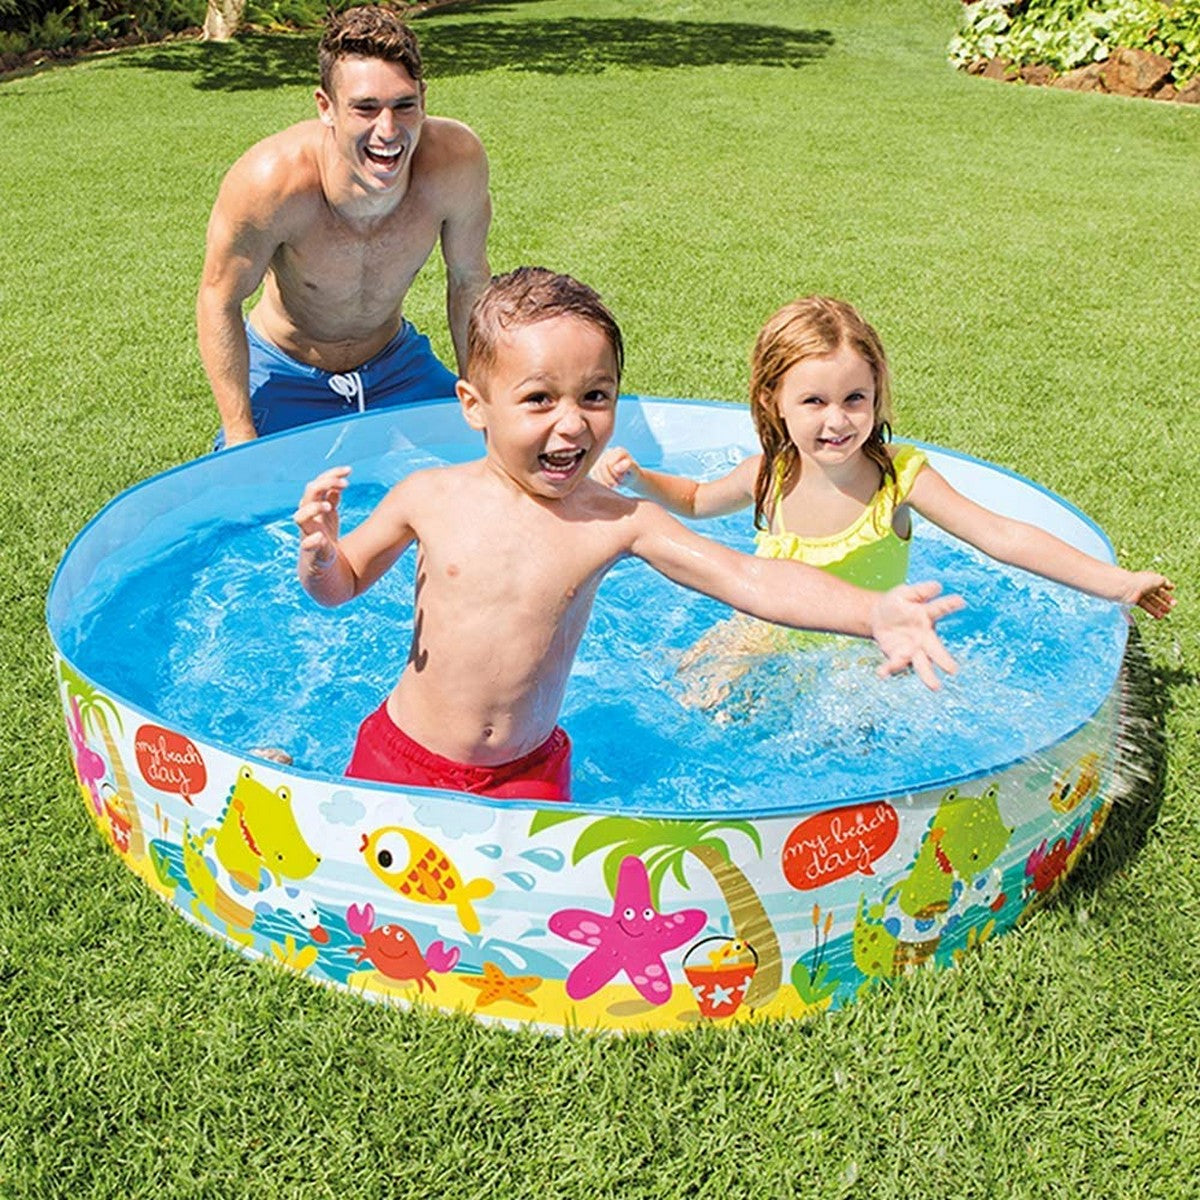 Intex Airless Kids Snapset Swimming pool-48 inch